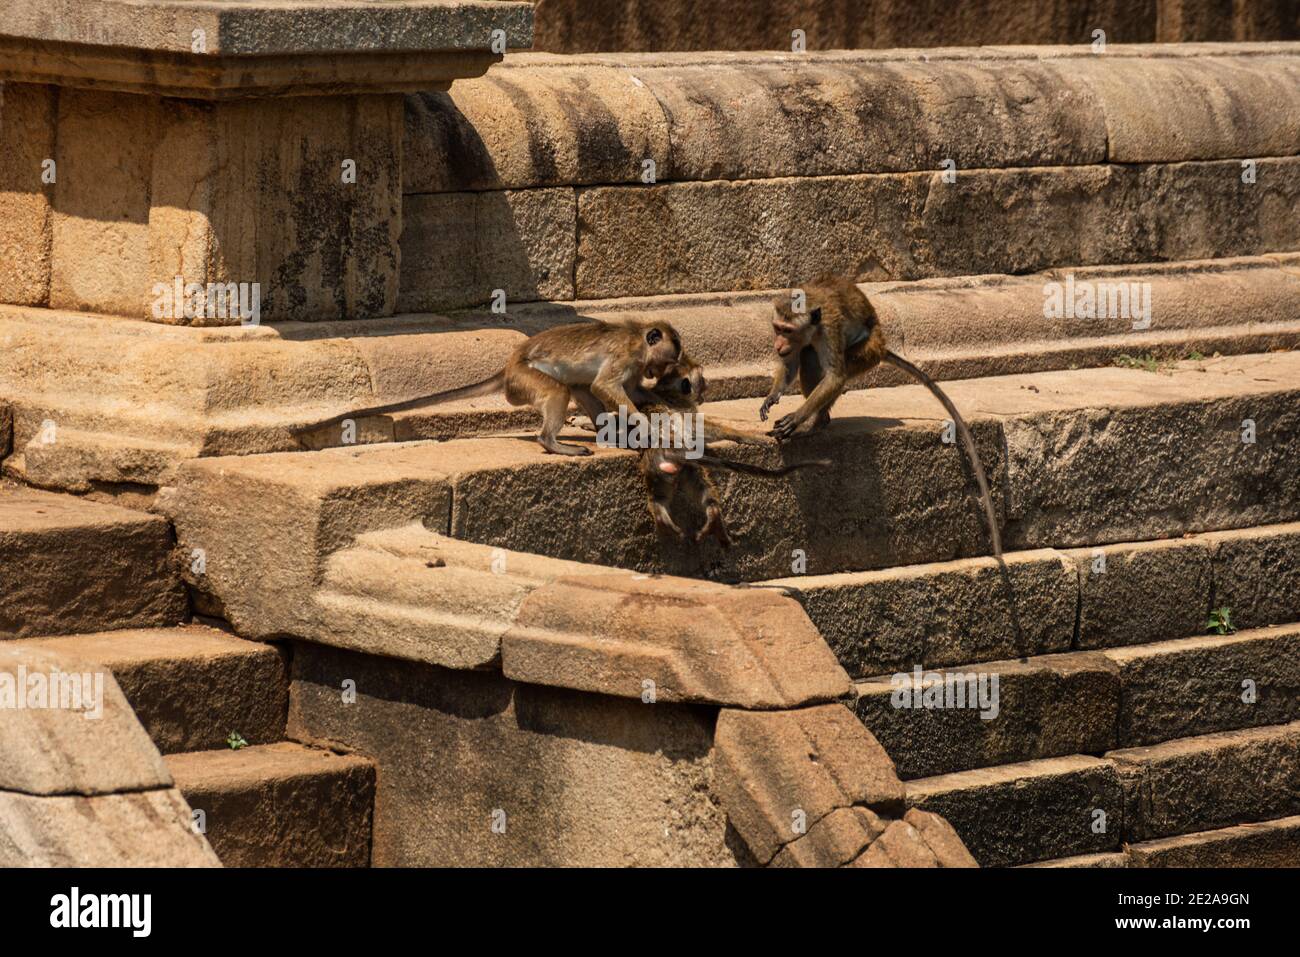 Singe macaque, Macaca Sinica, Sri Lanka. Singes jouant dans les ruines antiques Banque D'Images